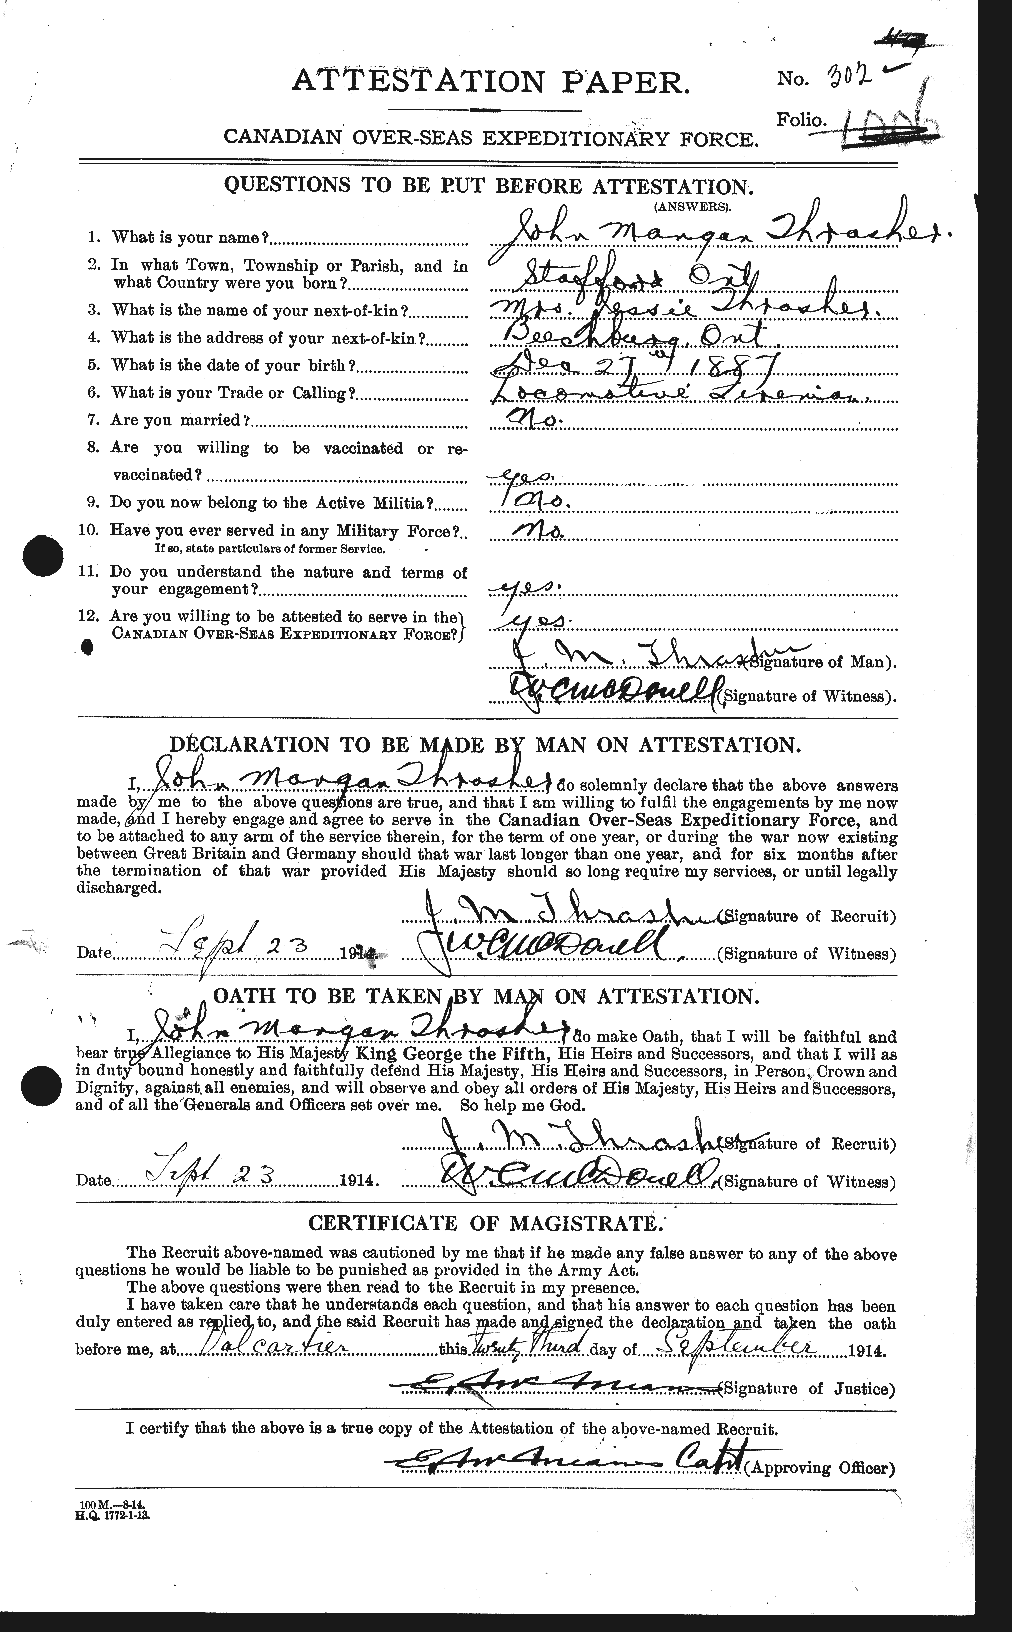 Dossiers du Personnel de la Première Guerre mondiale - CEC 635101a